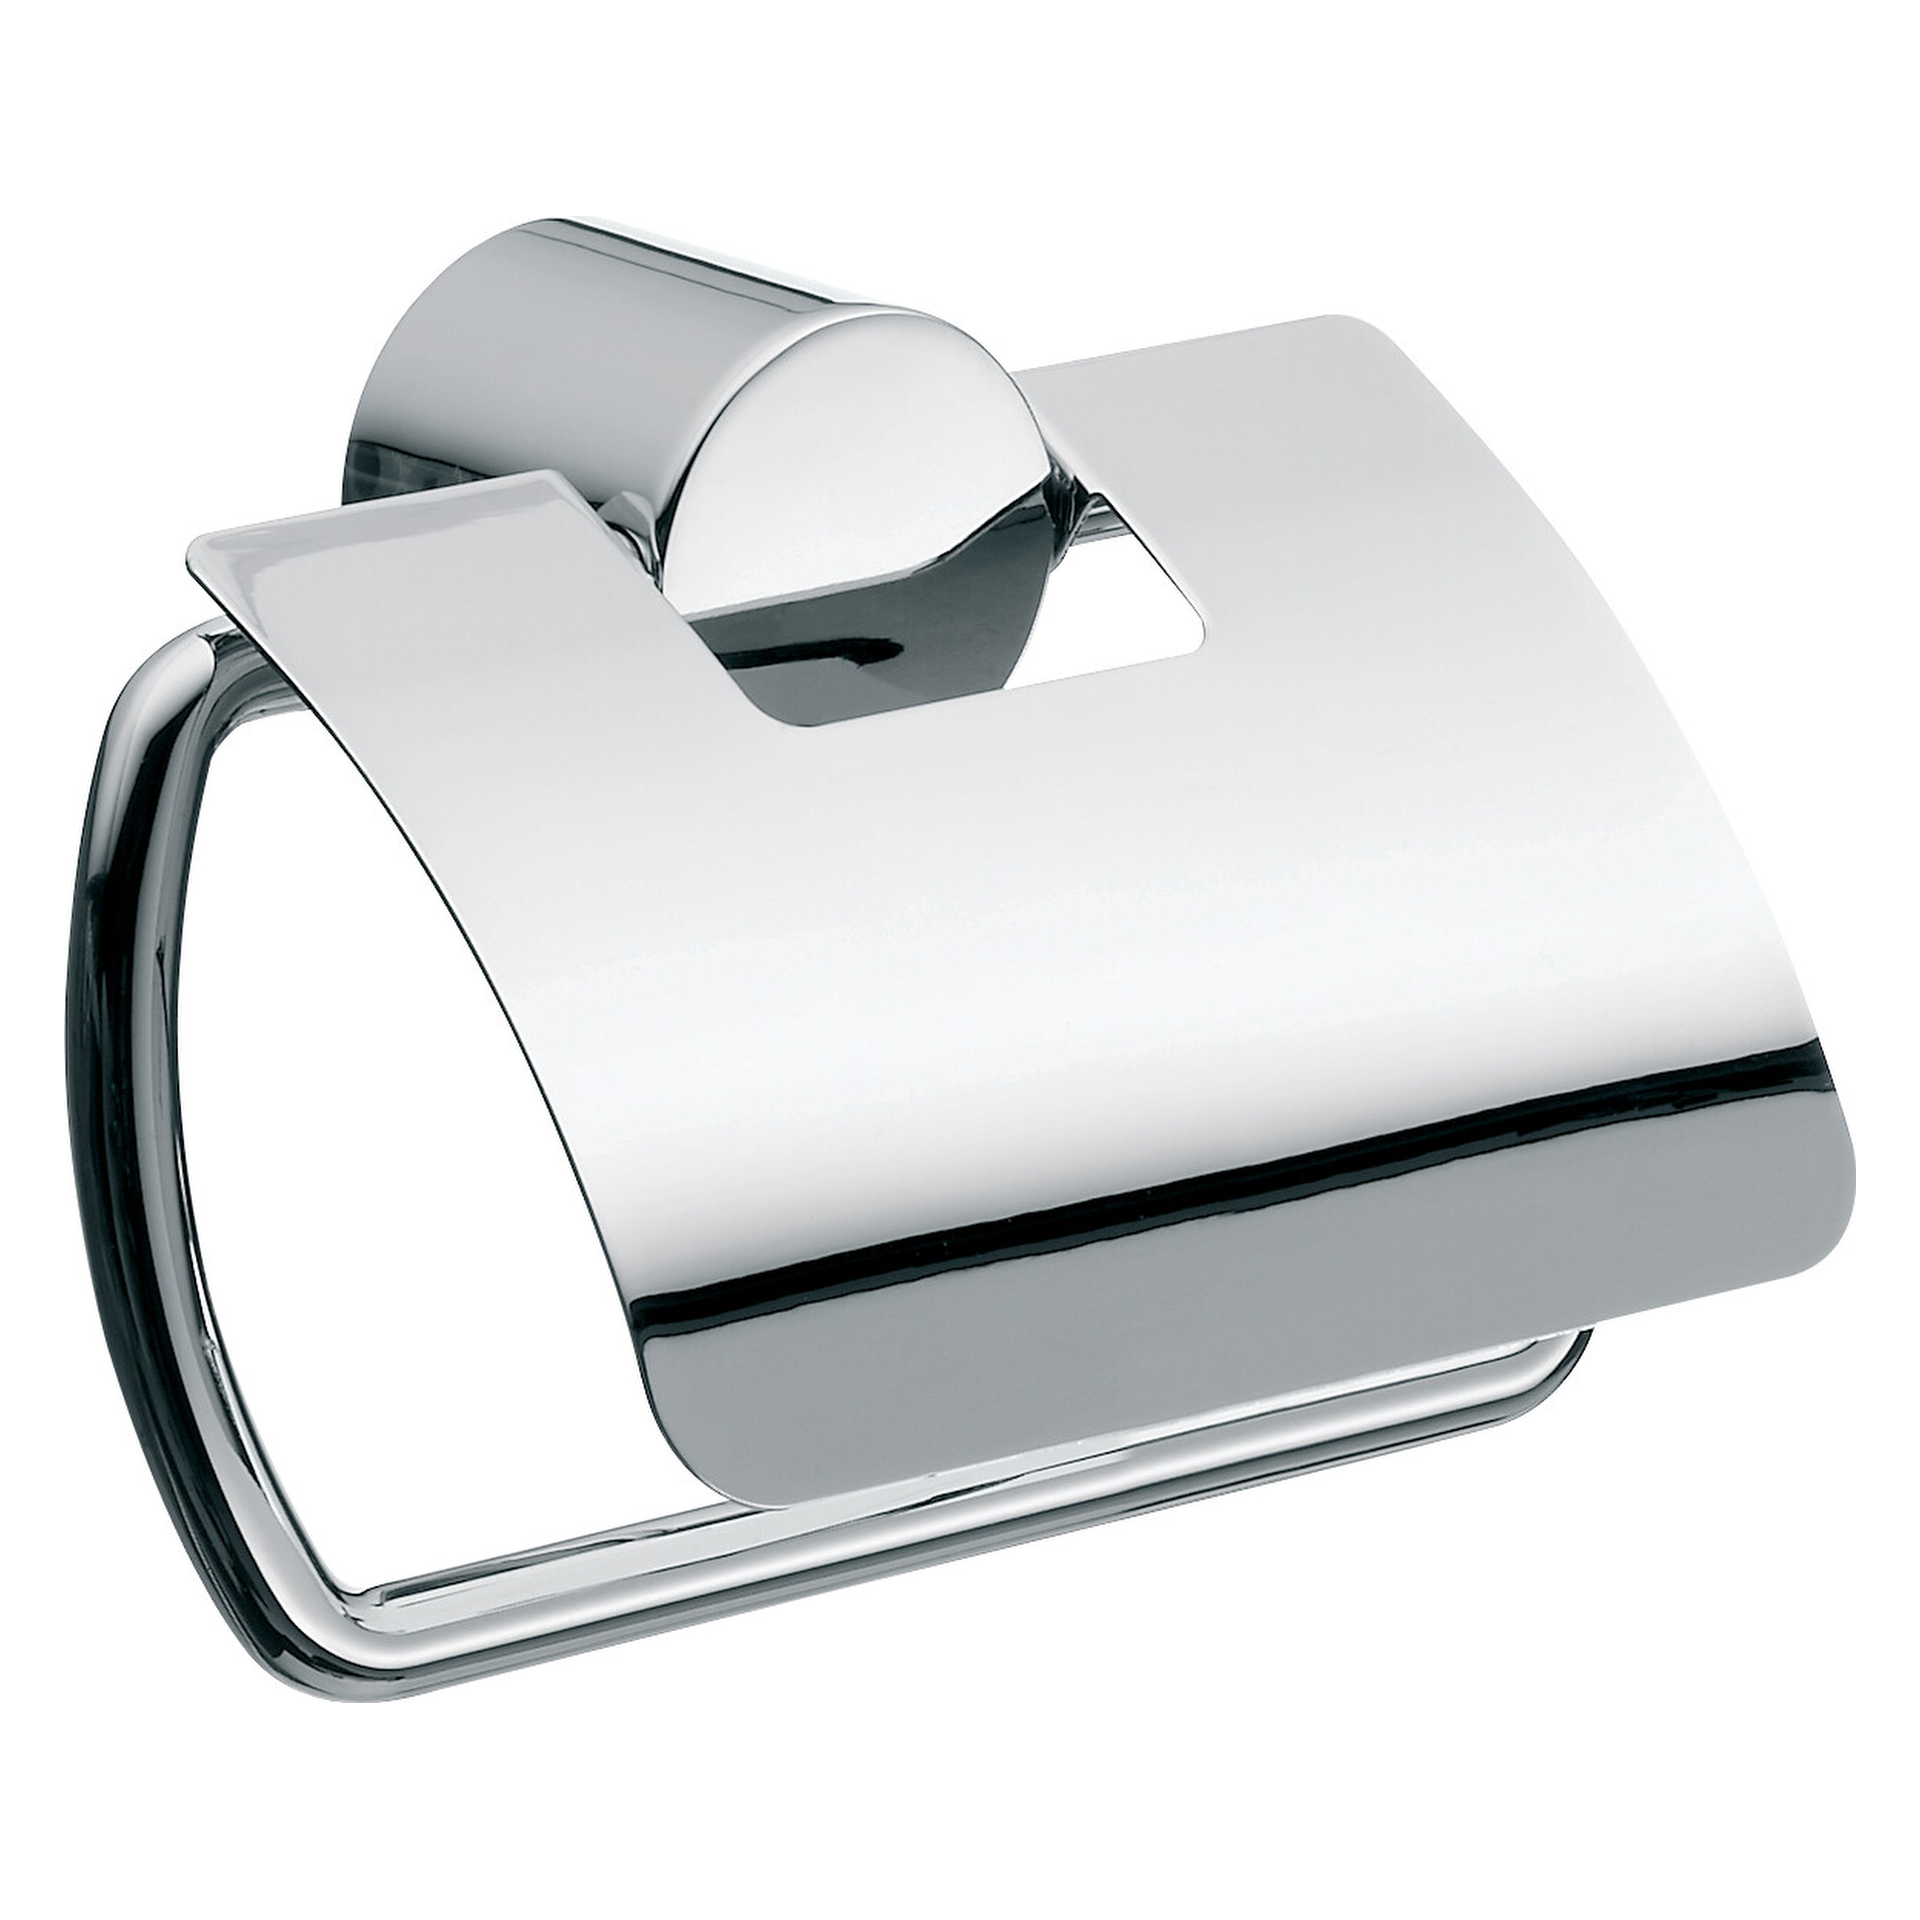 emco Toilettenpapierhalter mit Deckel „rondo 2“ 10,6 × 9,4 cm in chrom, Befestigung verdeckt